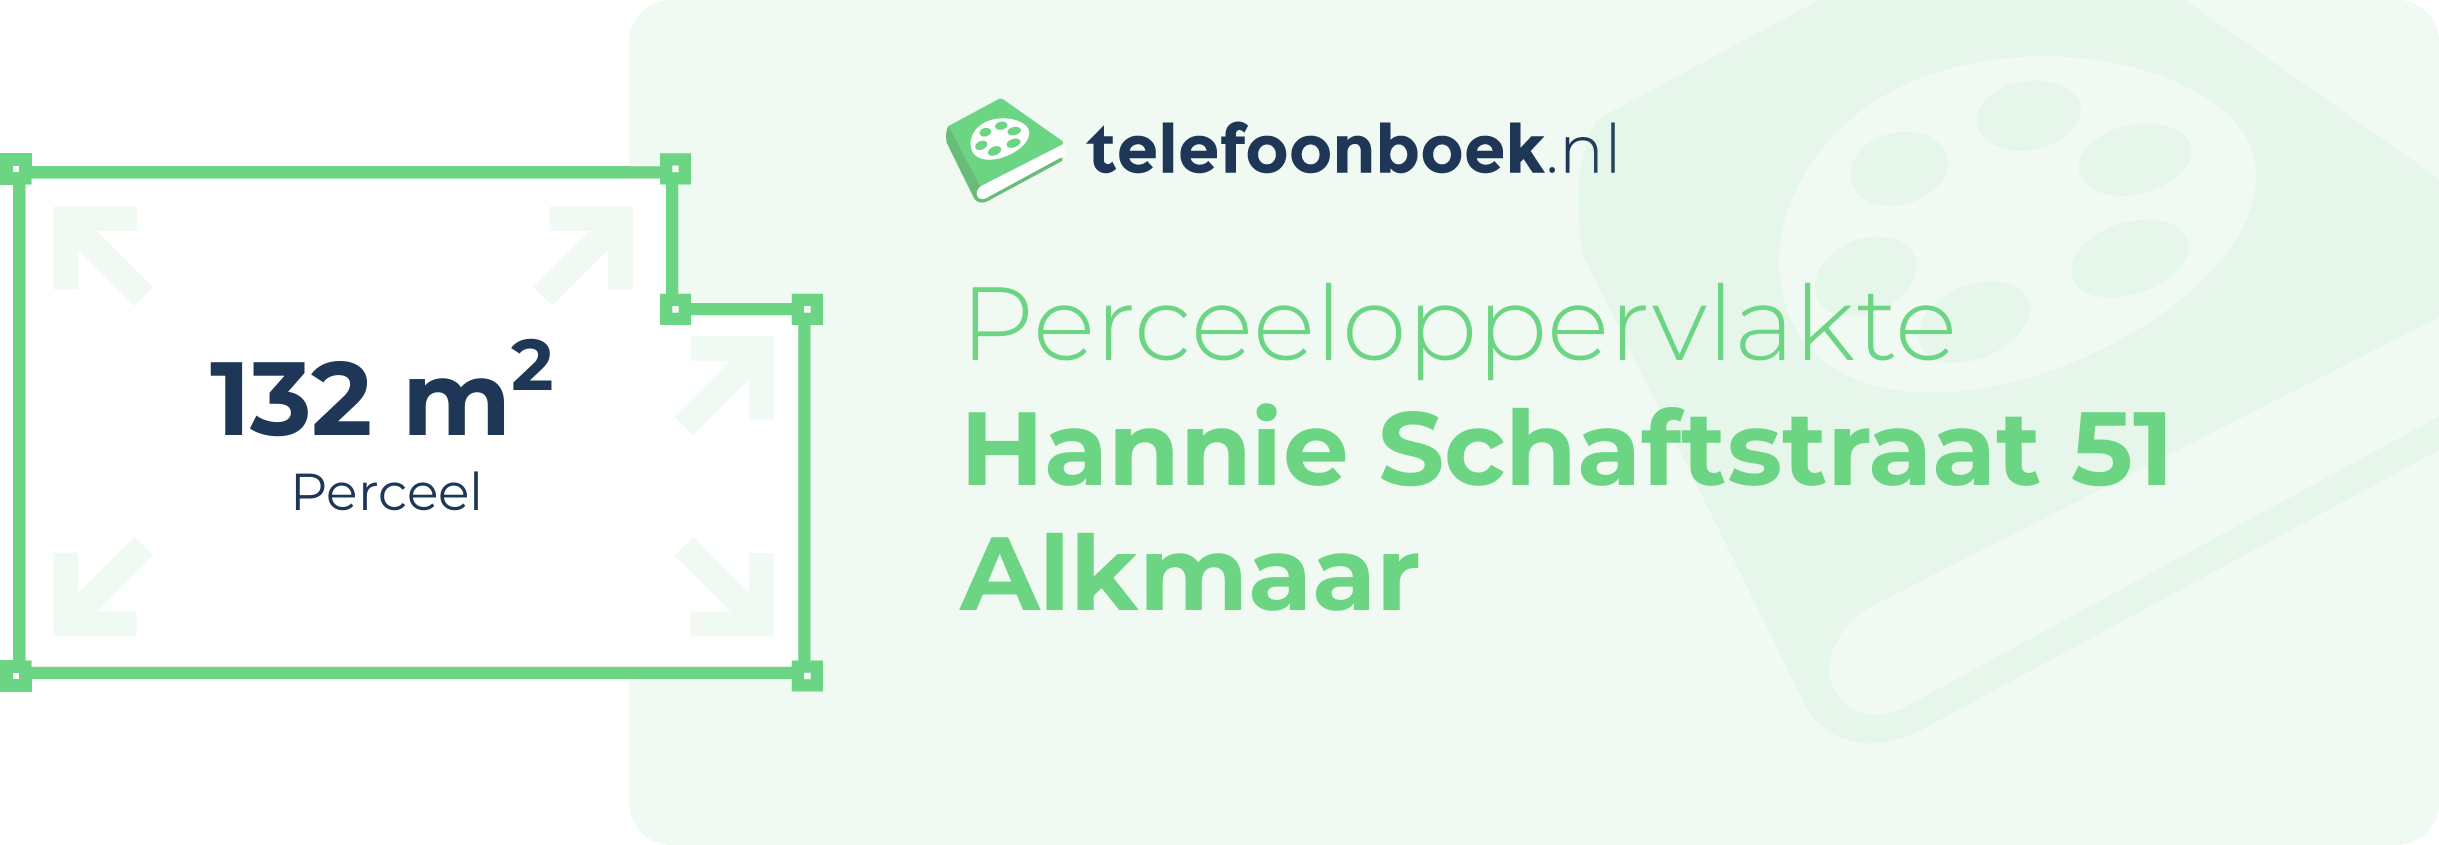 Perceeloppervlakte Hannie Schaftstraat 51 Alkmaar